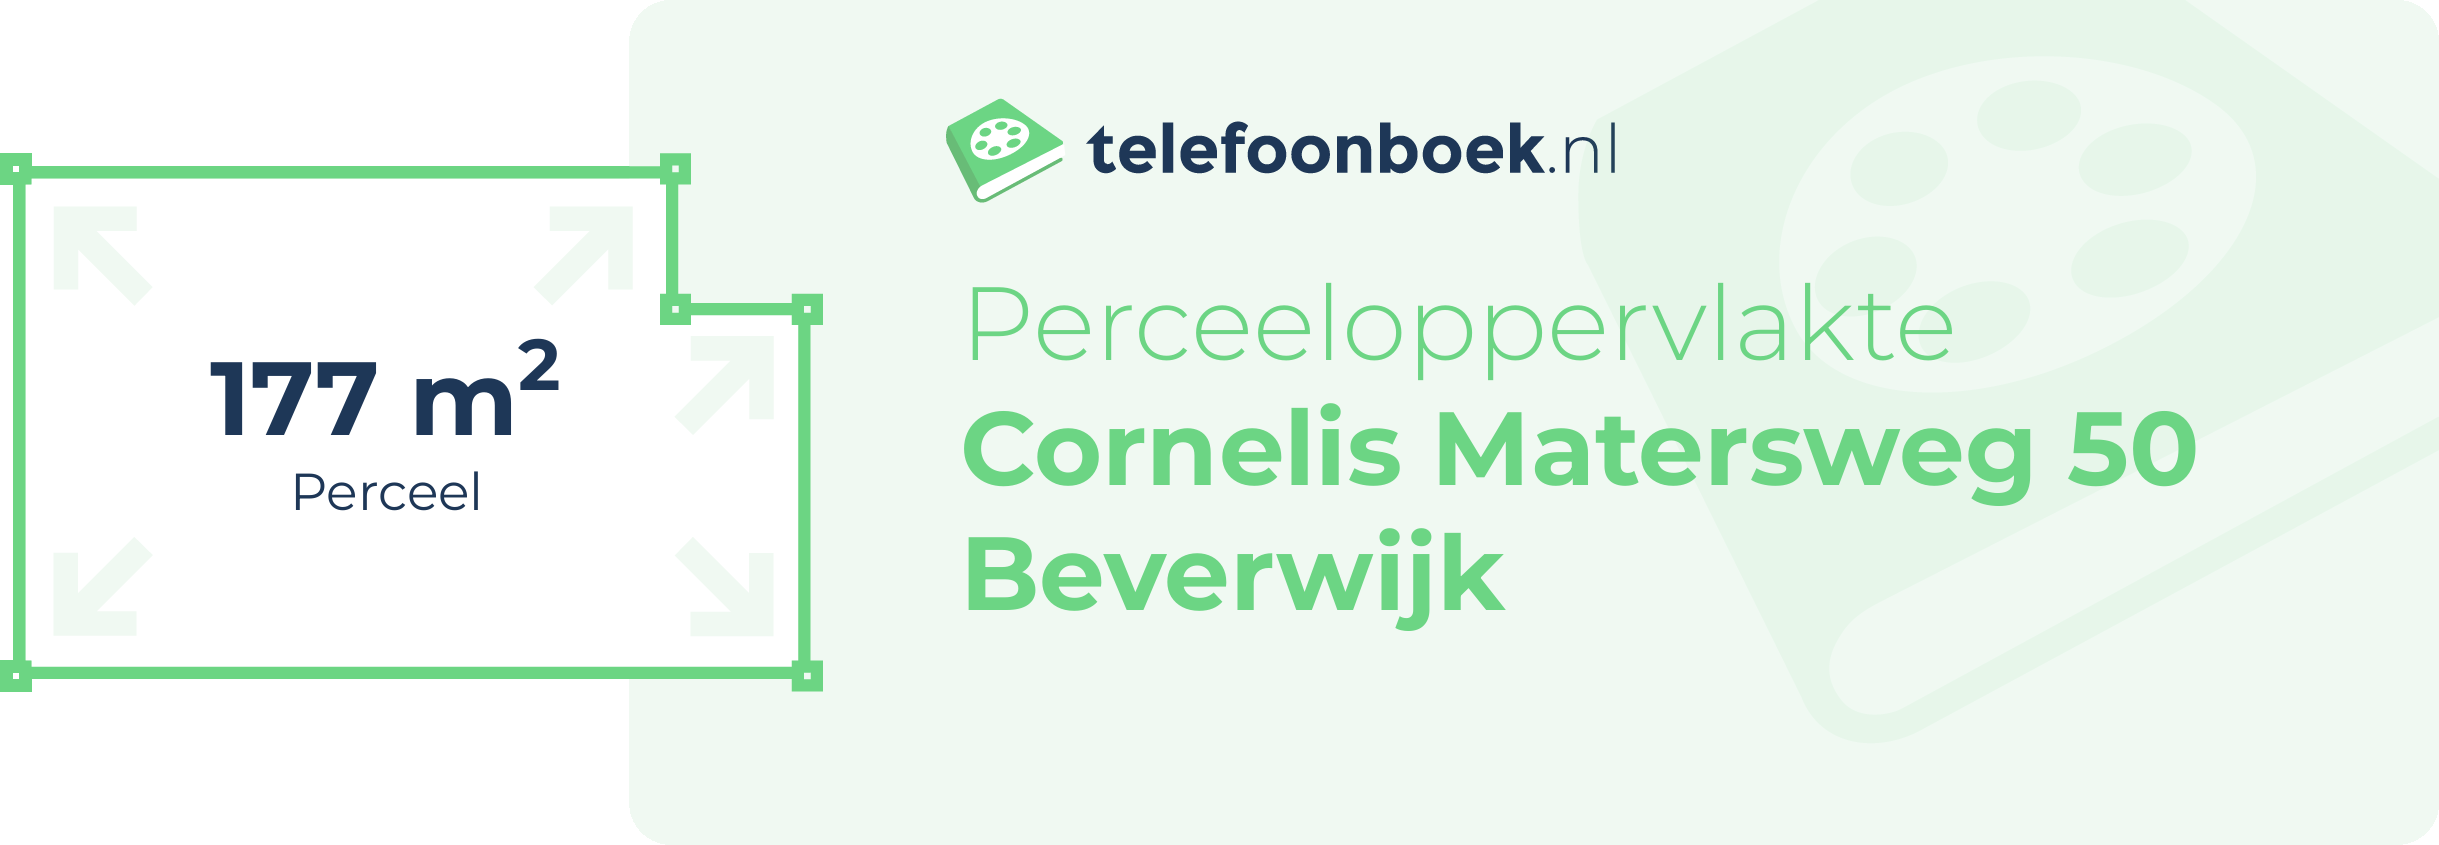 Perceeloppervlakte Cornelis Matersweg 50 Beverwijk